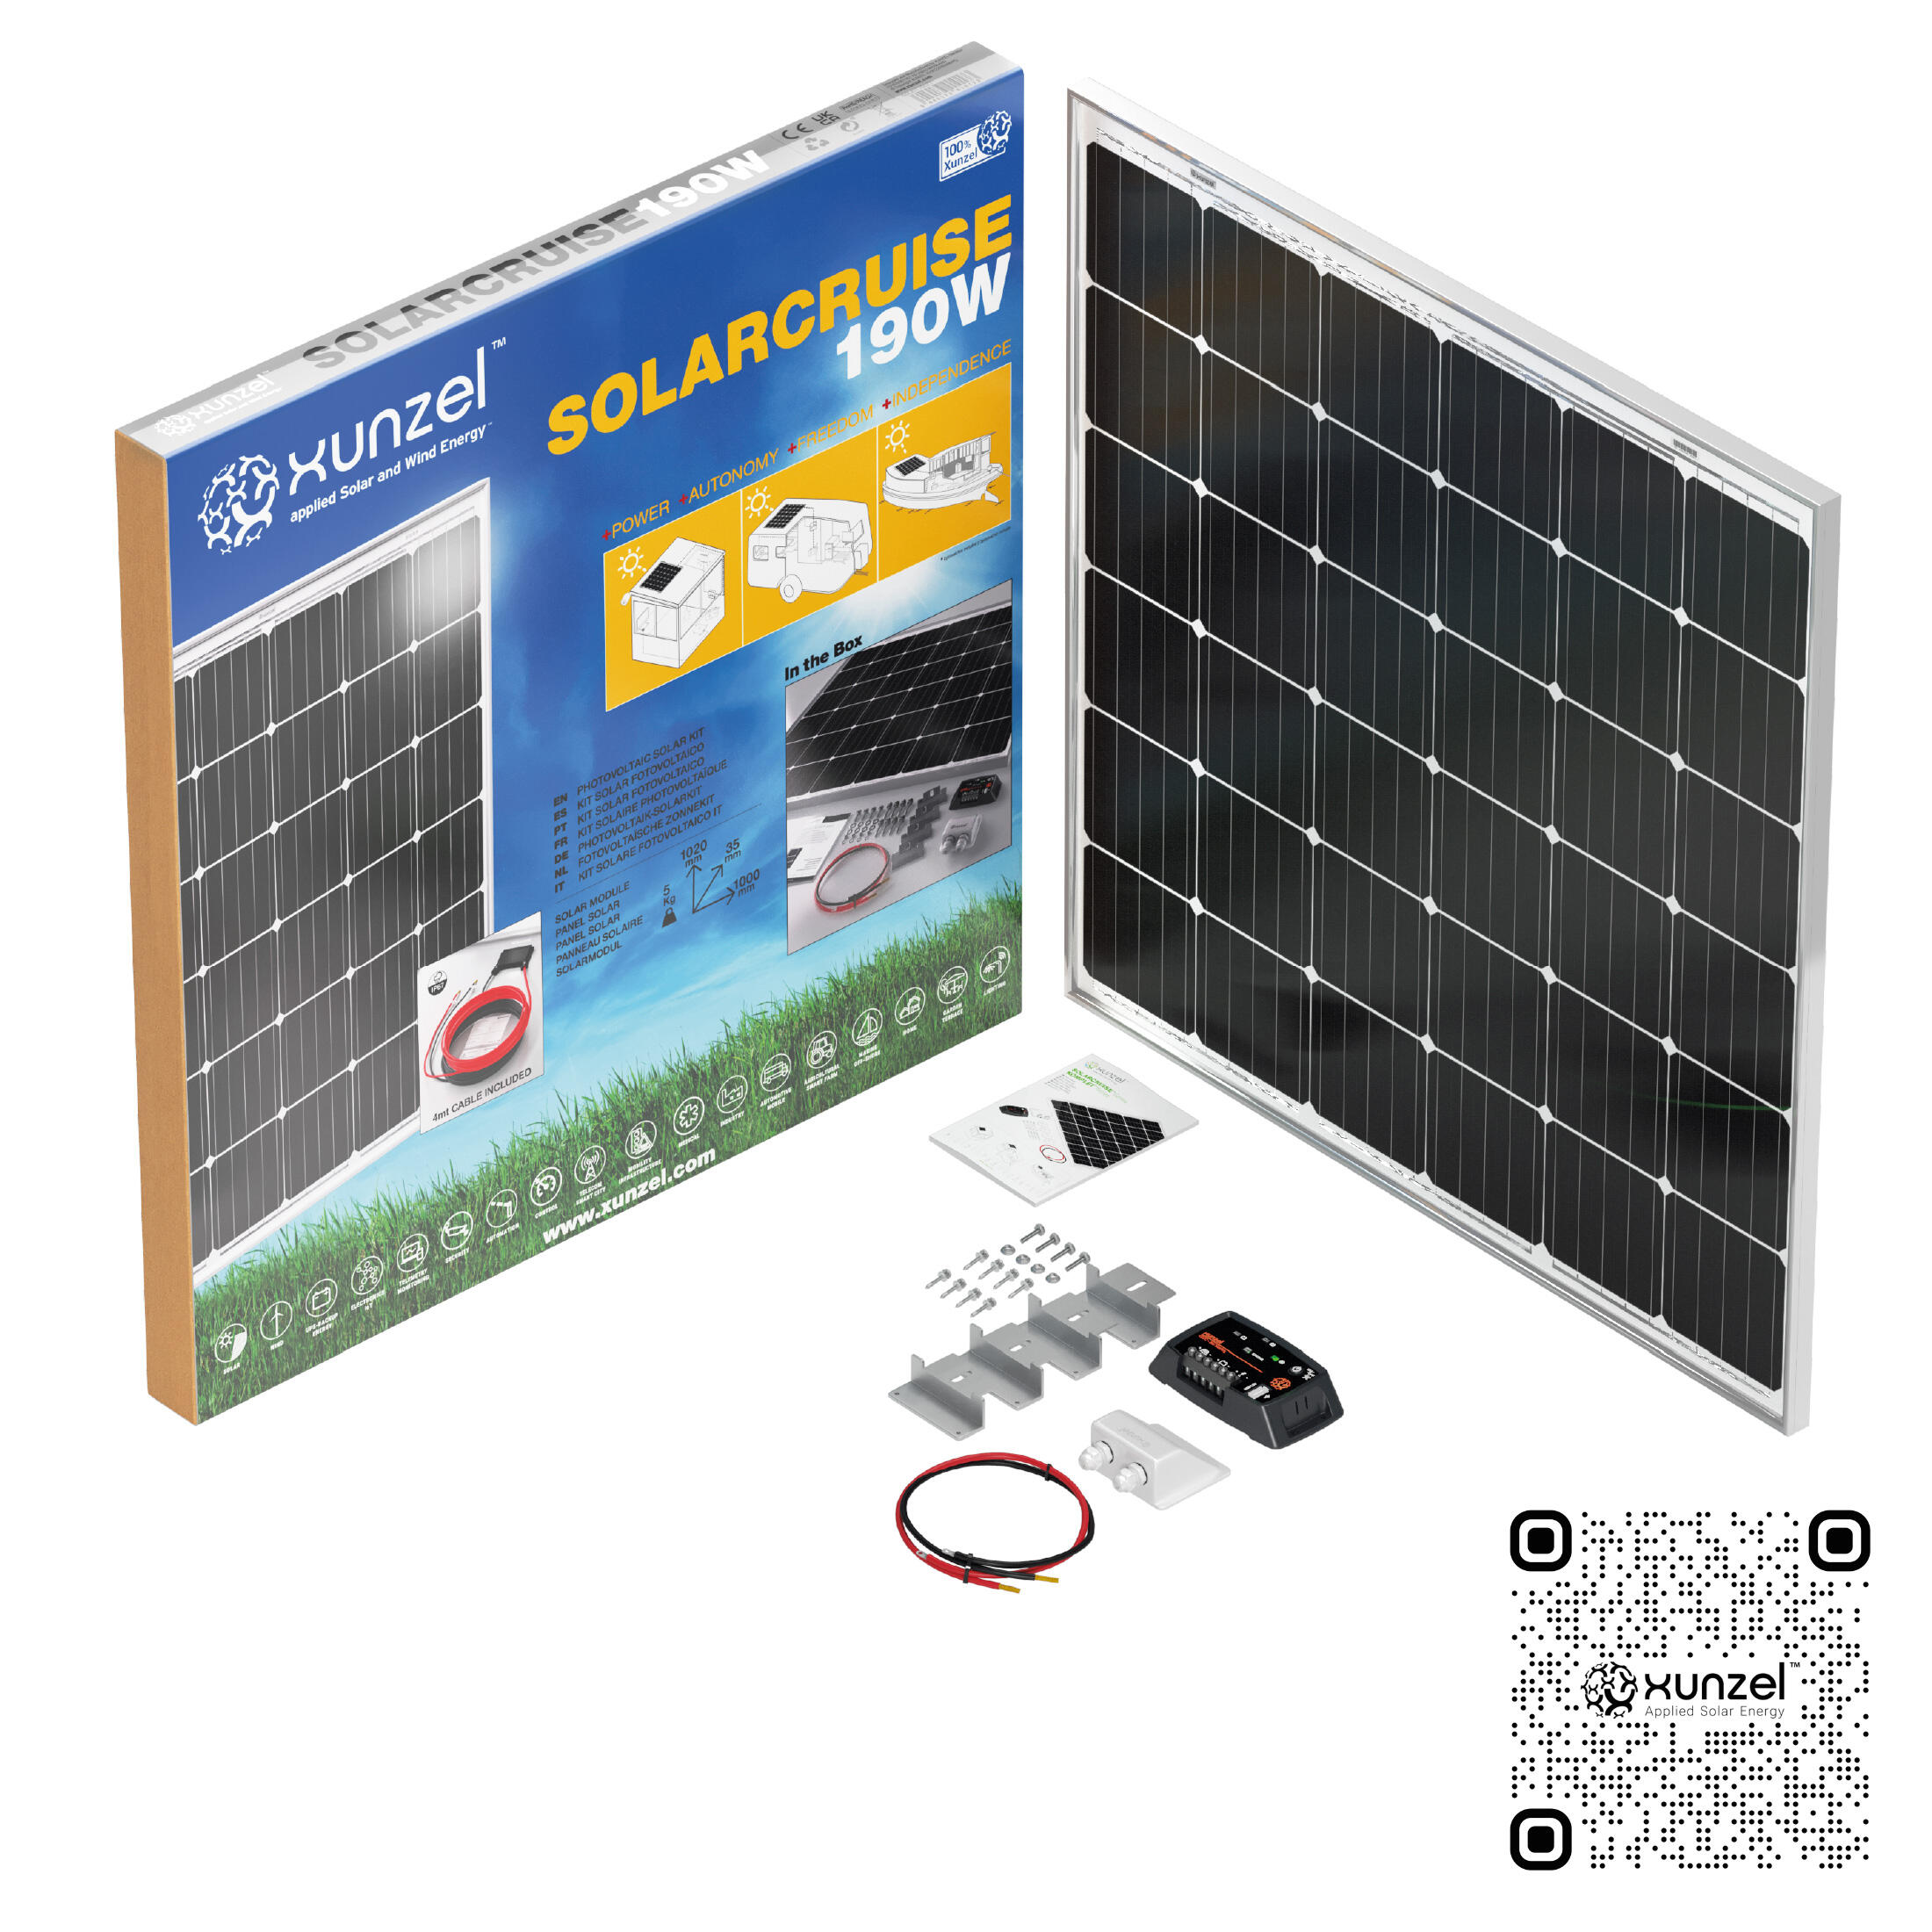 Kit solar fotovoltaico carga batería solarcruise-xunzel-190w-12v con fijaciones